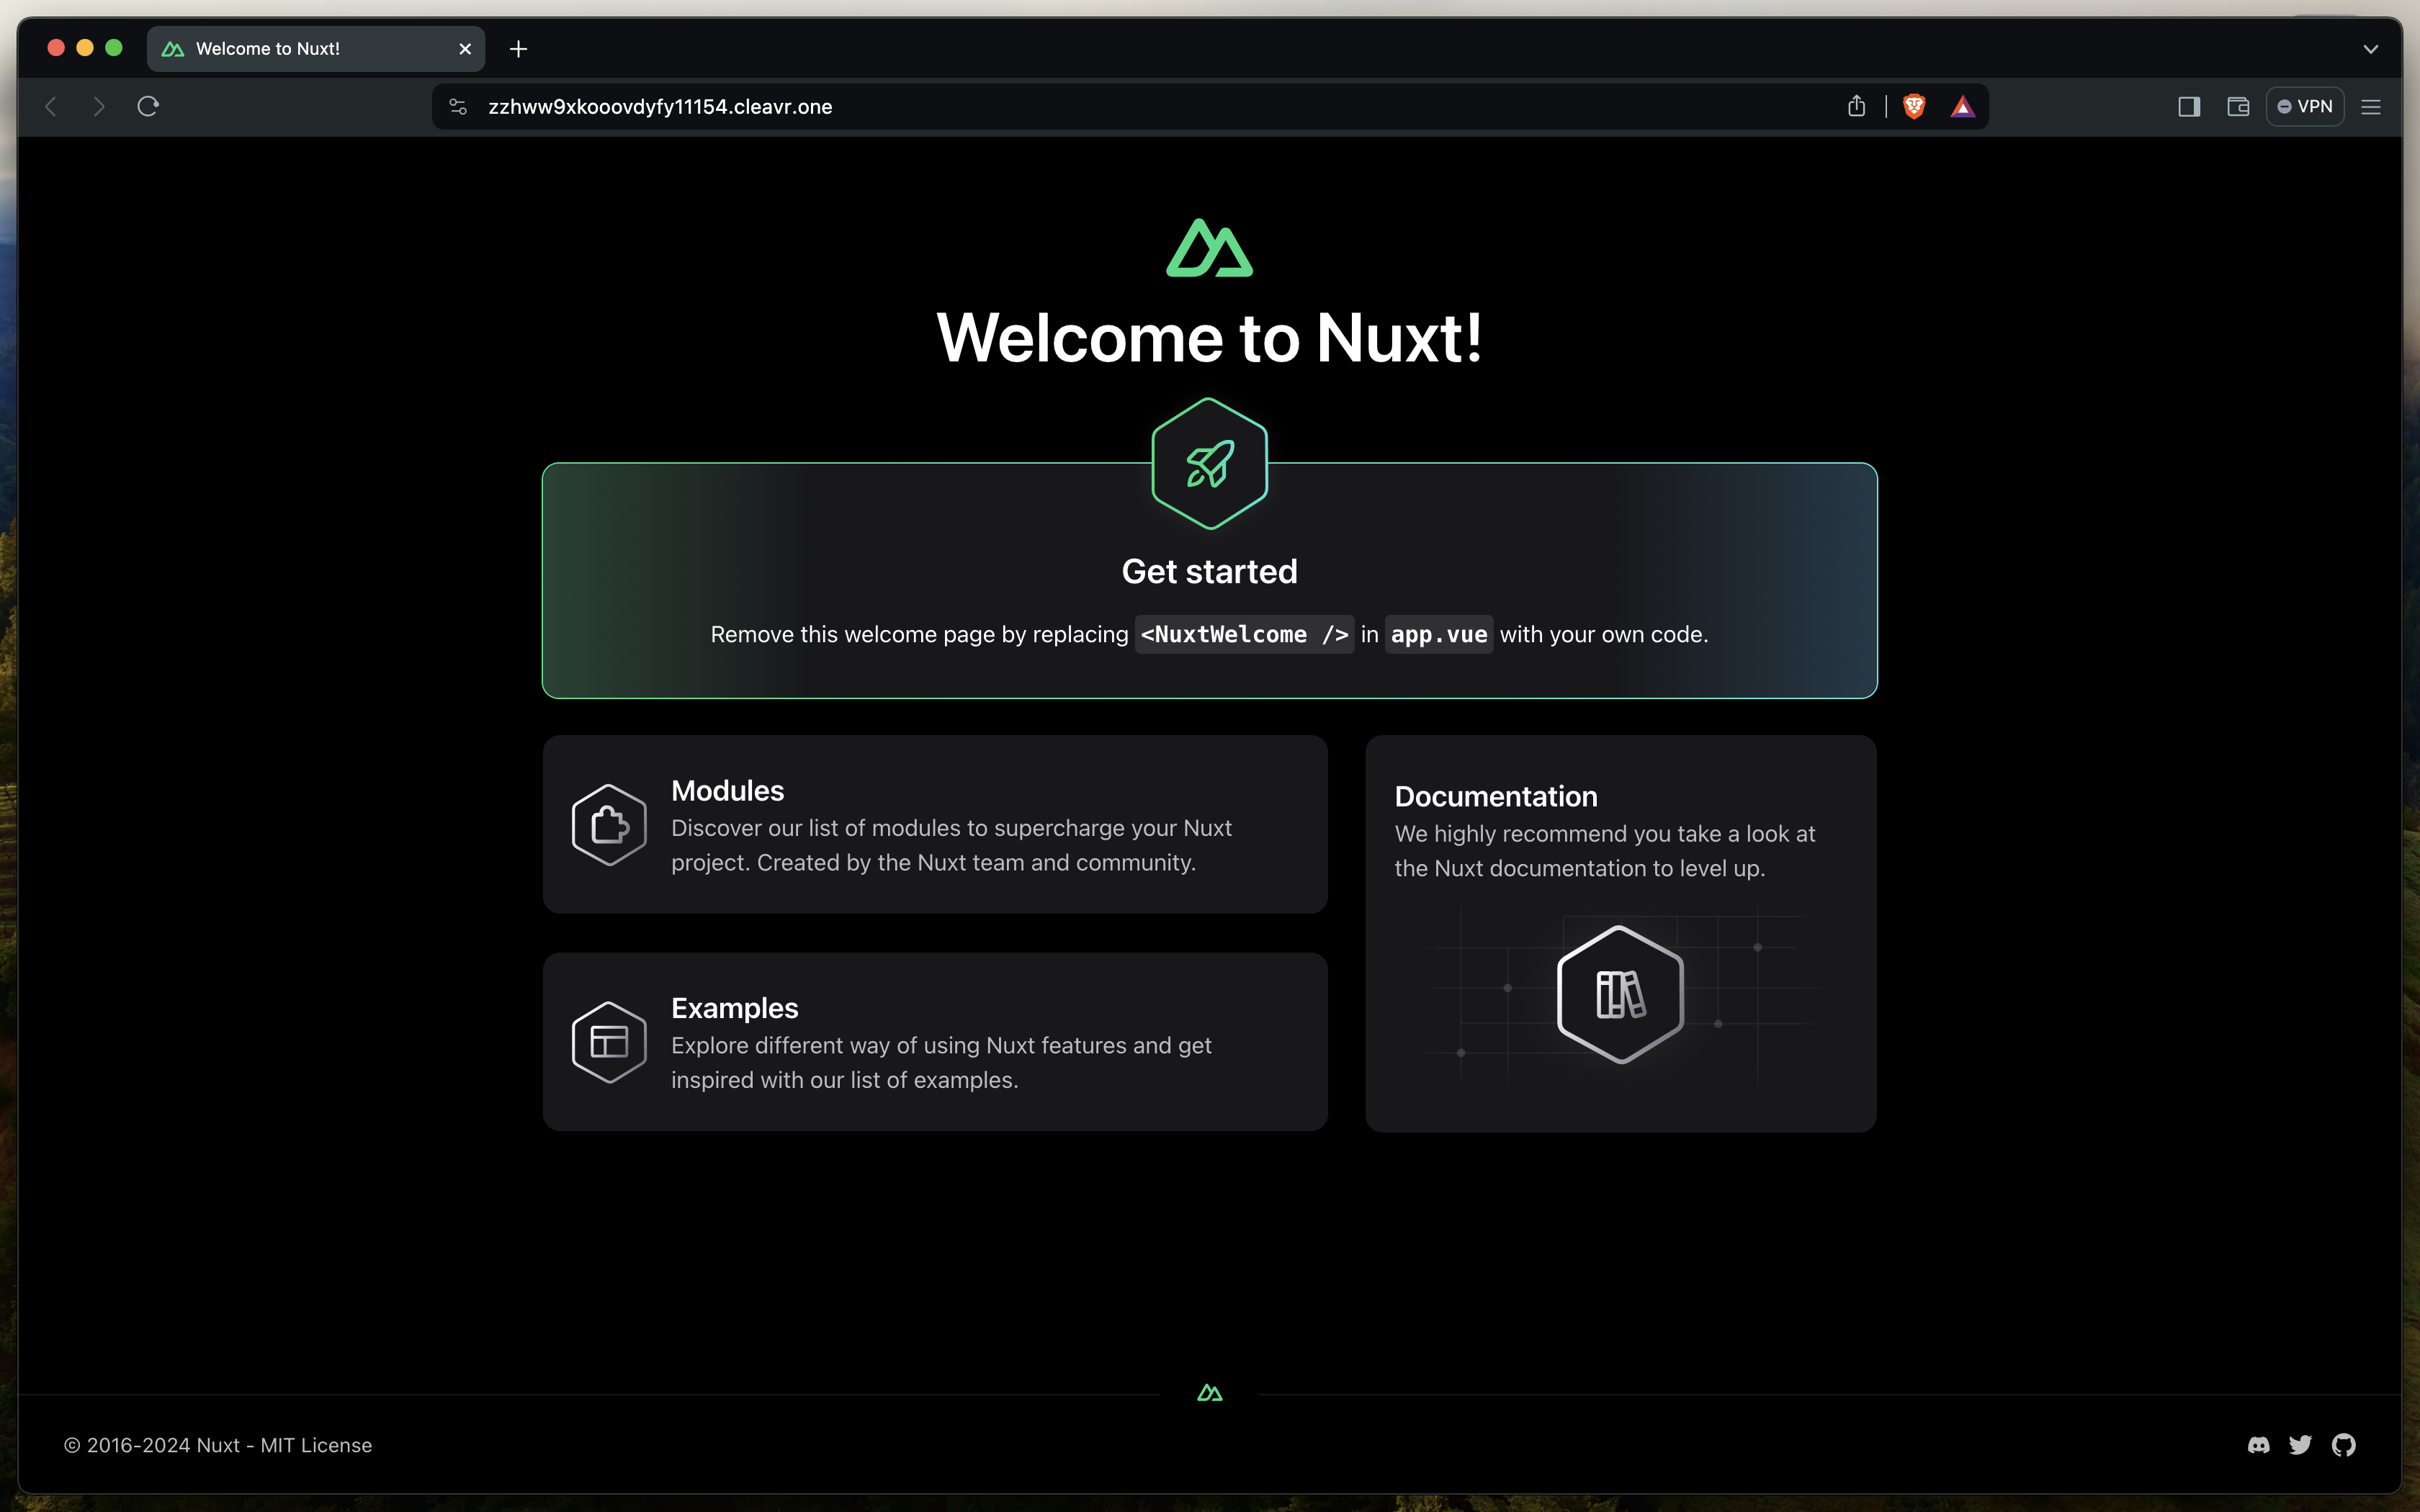 Cleavr - Nuxt App Demo in Prod